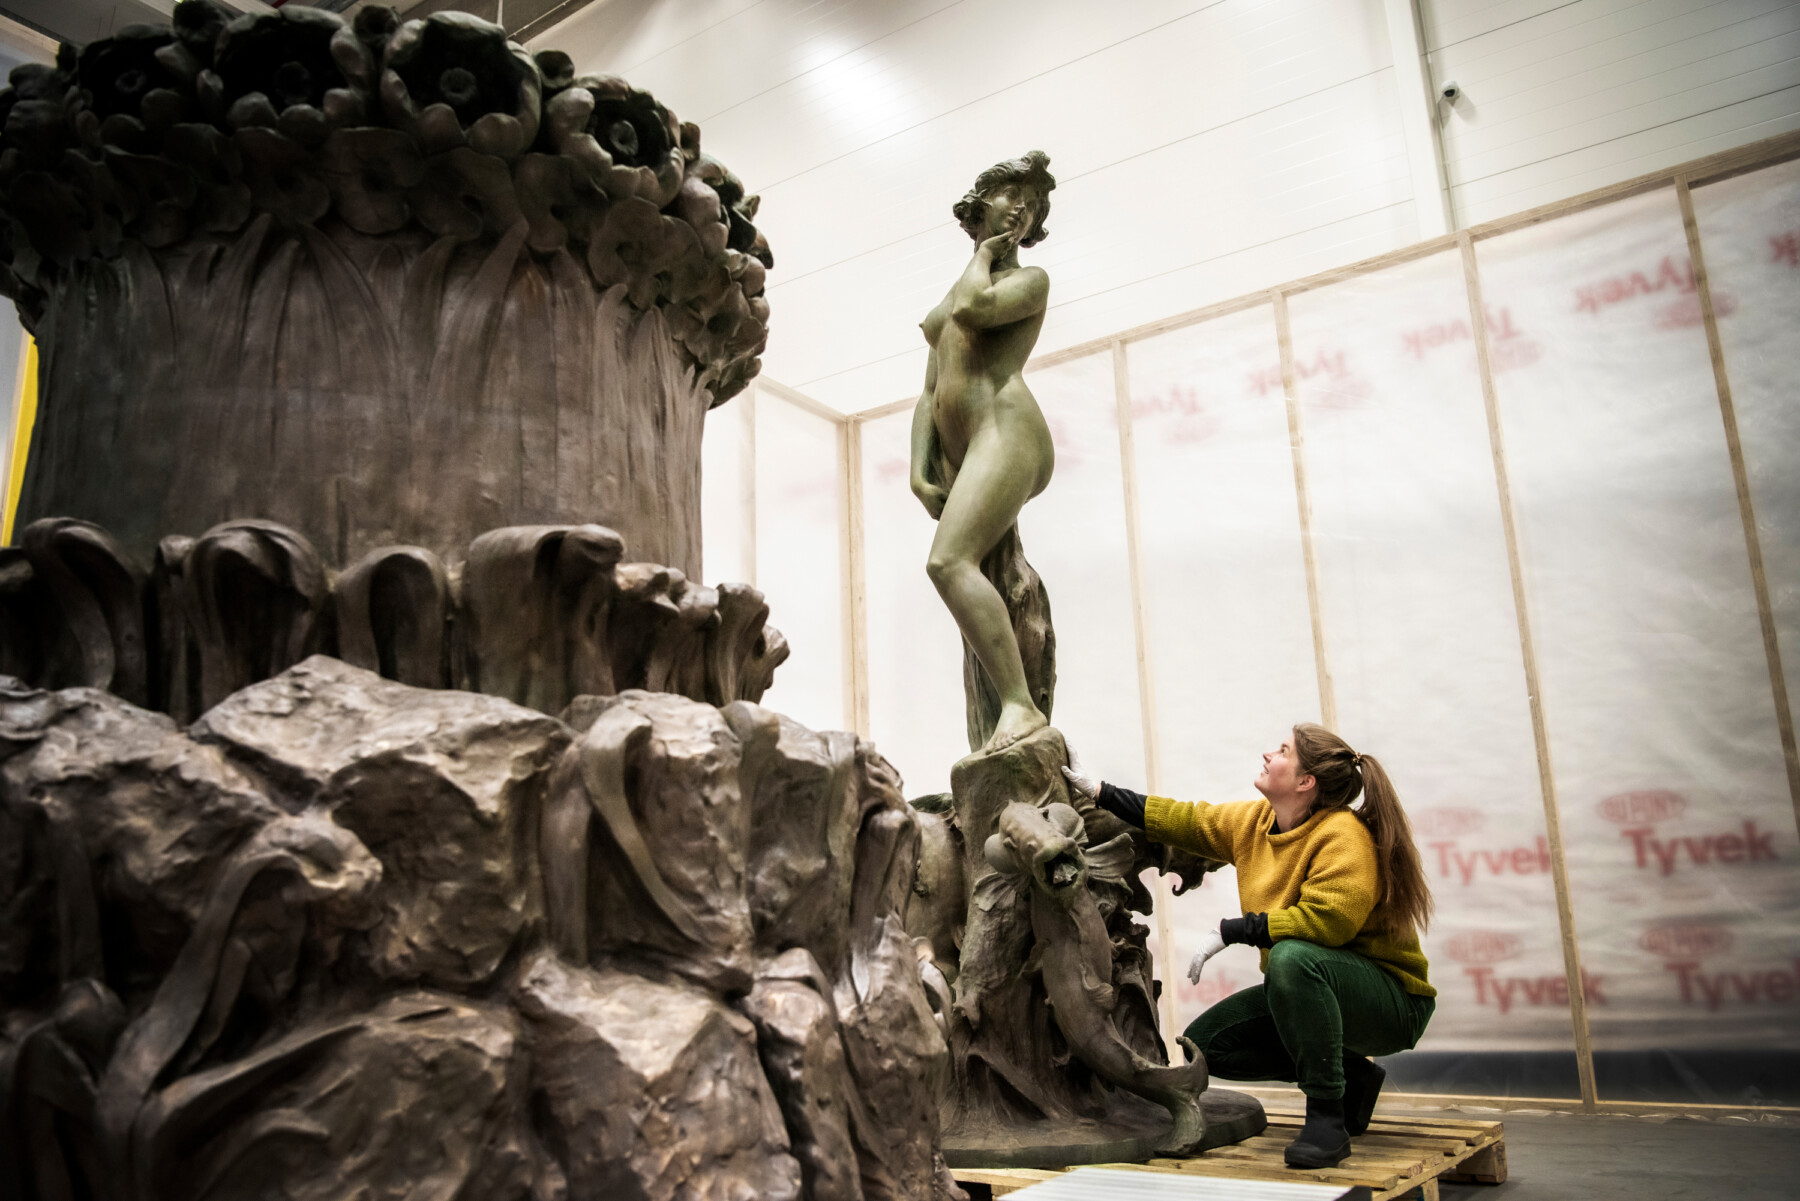 Dans un atelier, une femme agenouillée est en train d’observer un socle sculpté surmonté d’une statue en métal représentant une figure féminine. 